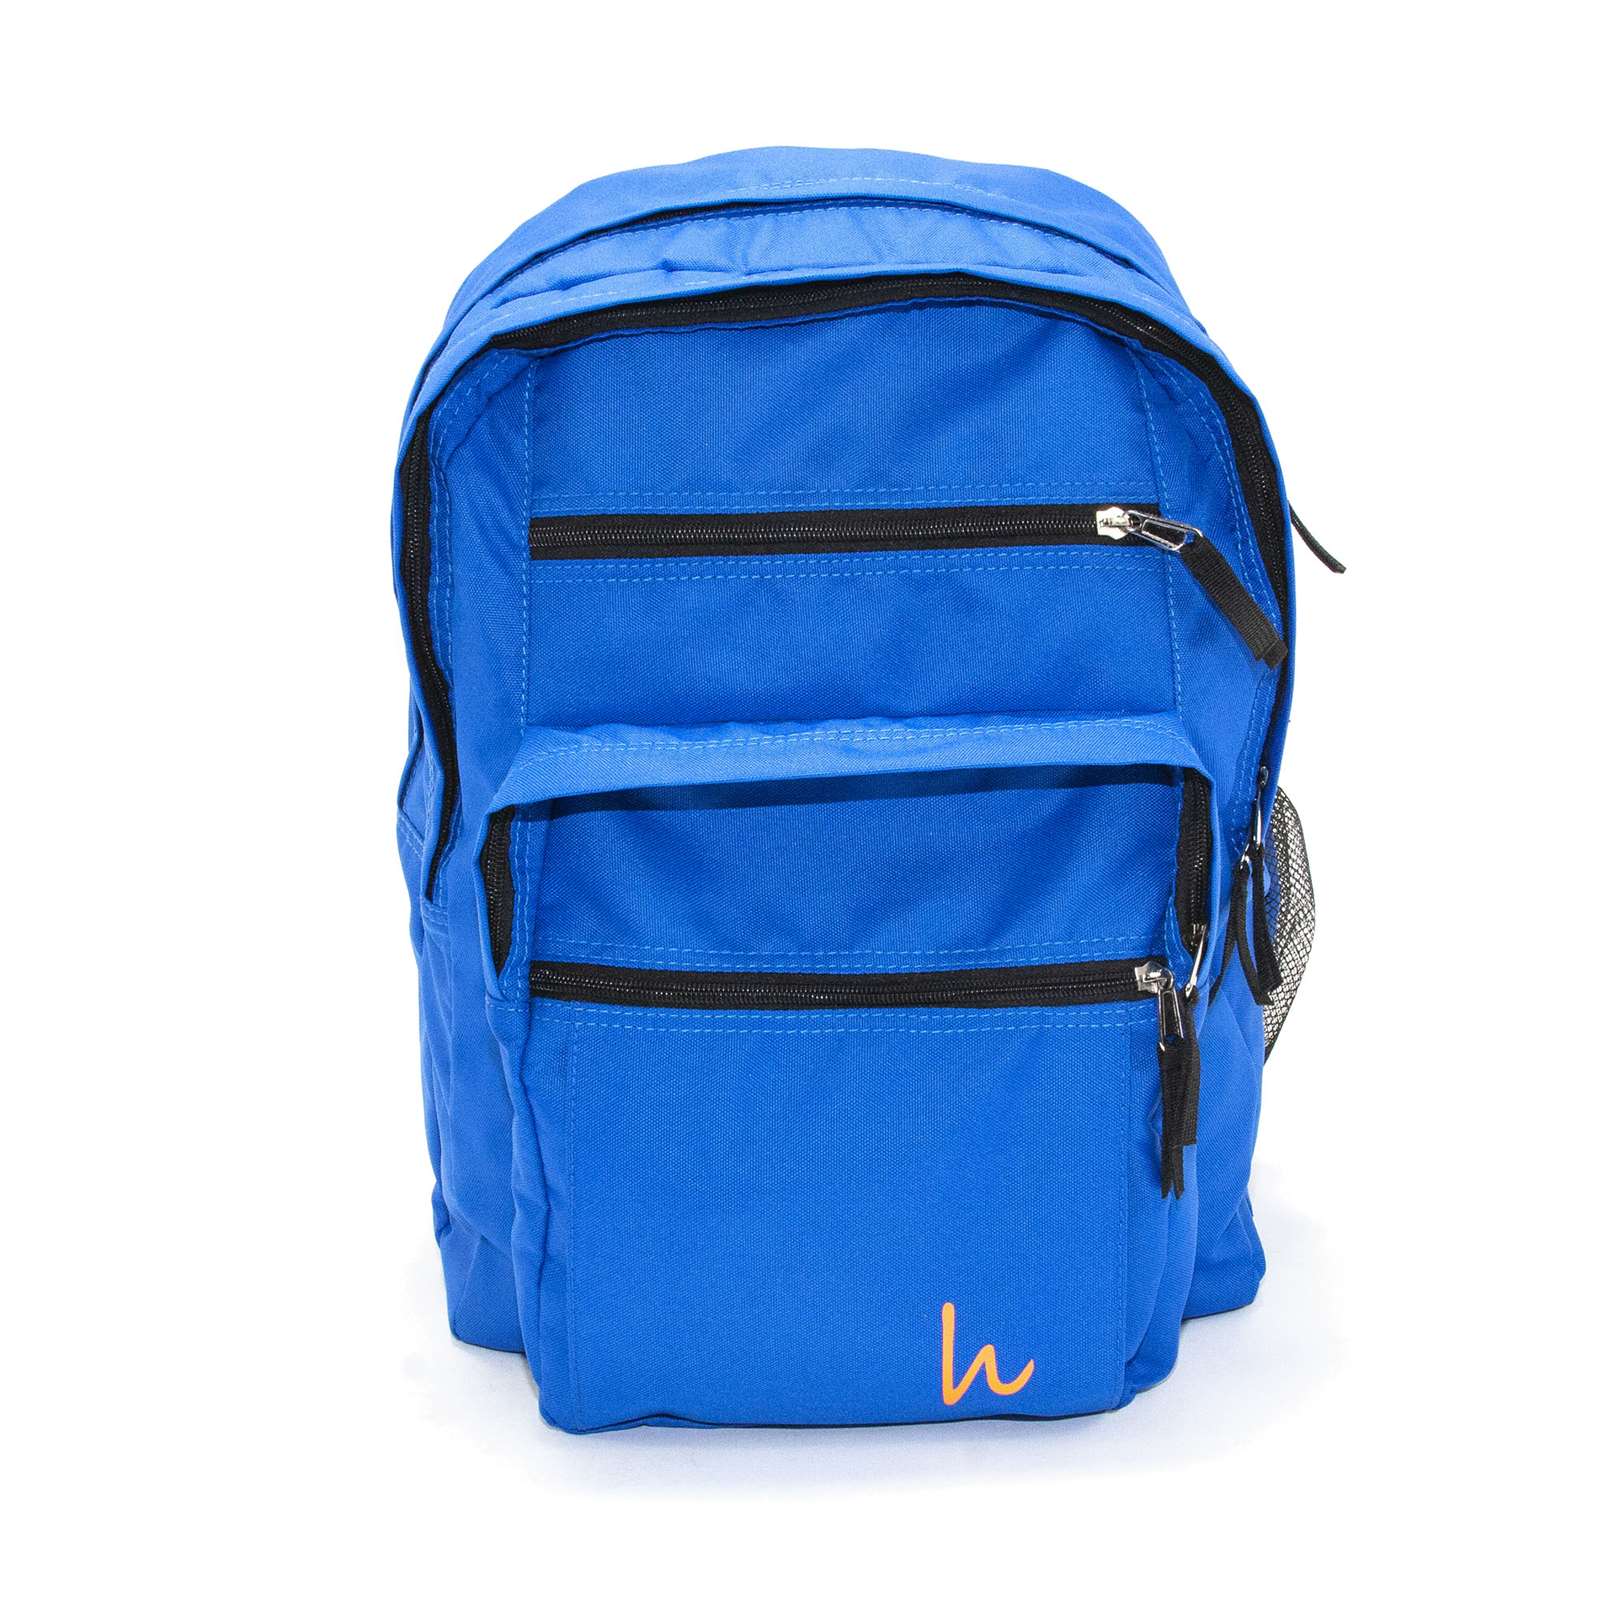 Hakki Men Ready To Go Everyday Multipurpose Backpack